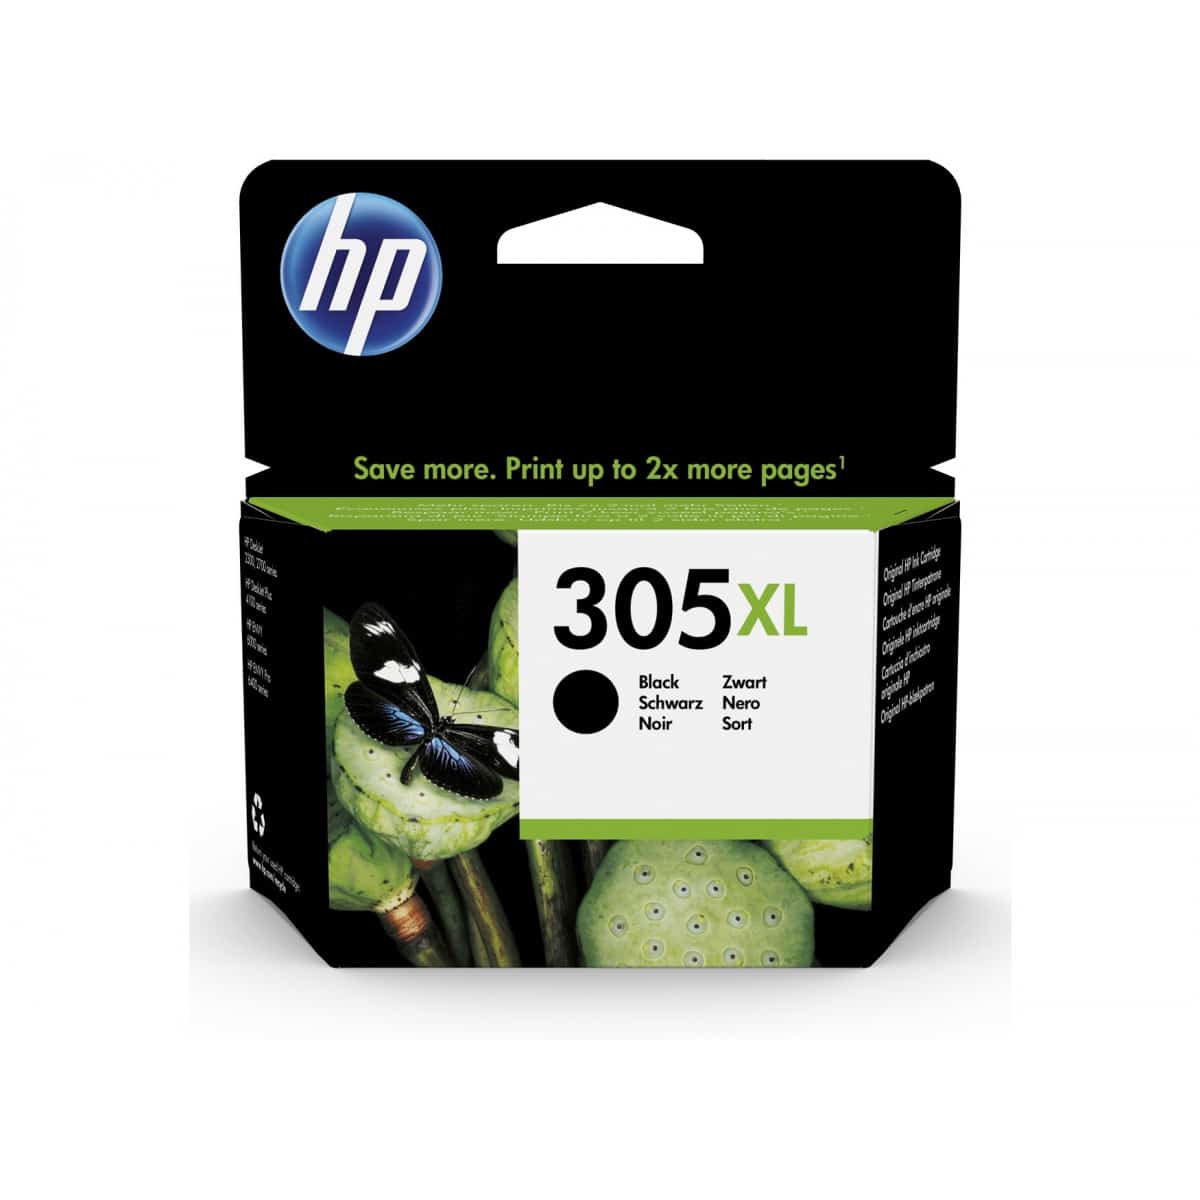 Cartouche d'encre compatible HP 301 - HP301 - Noir et Tricolor XL